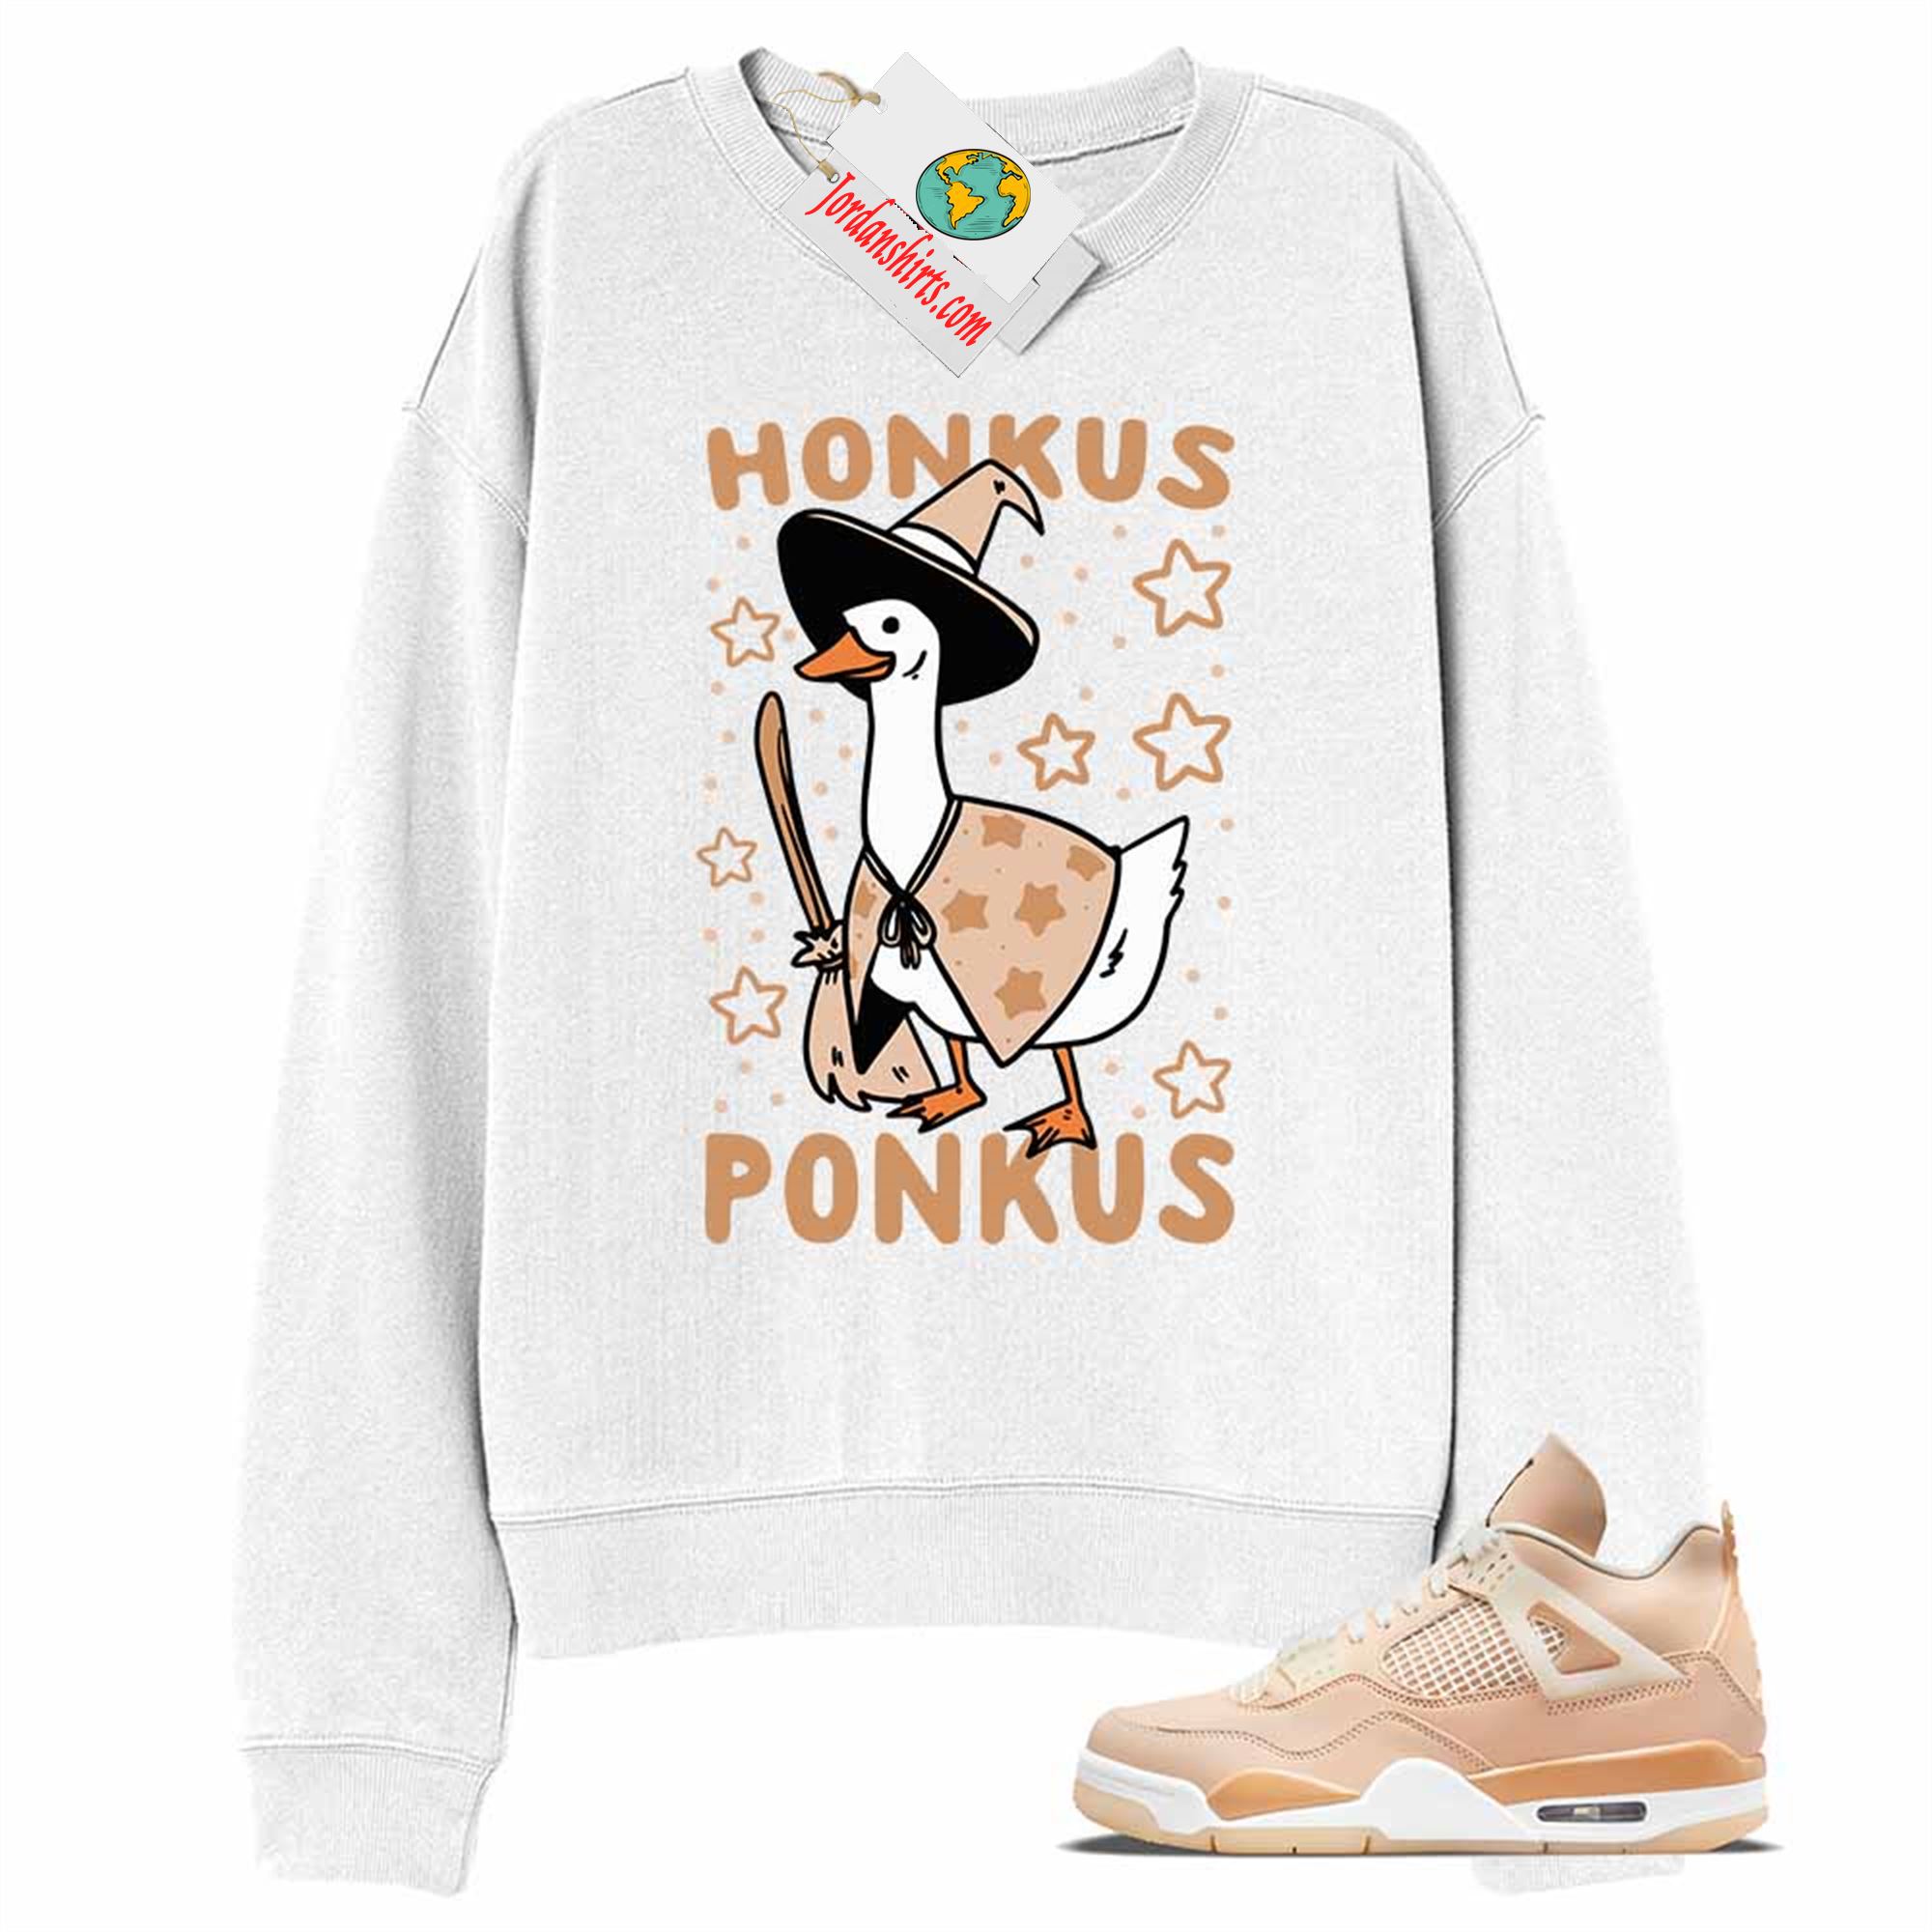 Jordan 4 Sweatshirt, Witches Duck Honkus Ponkus White Sweatshirt Air Jordan 4 Shimmer 4s Plus Size Up To 5xl